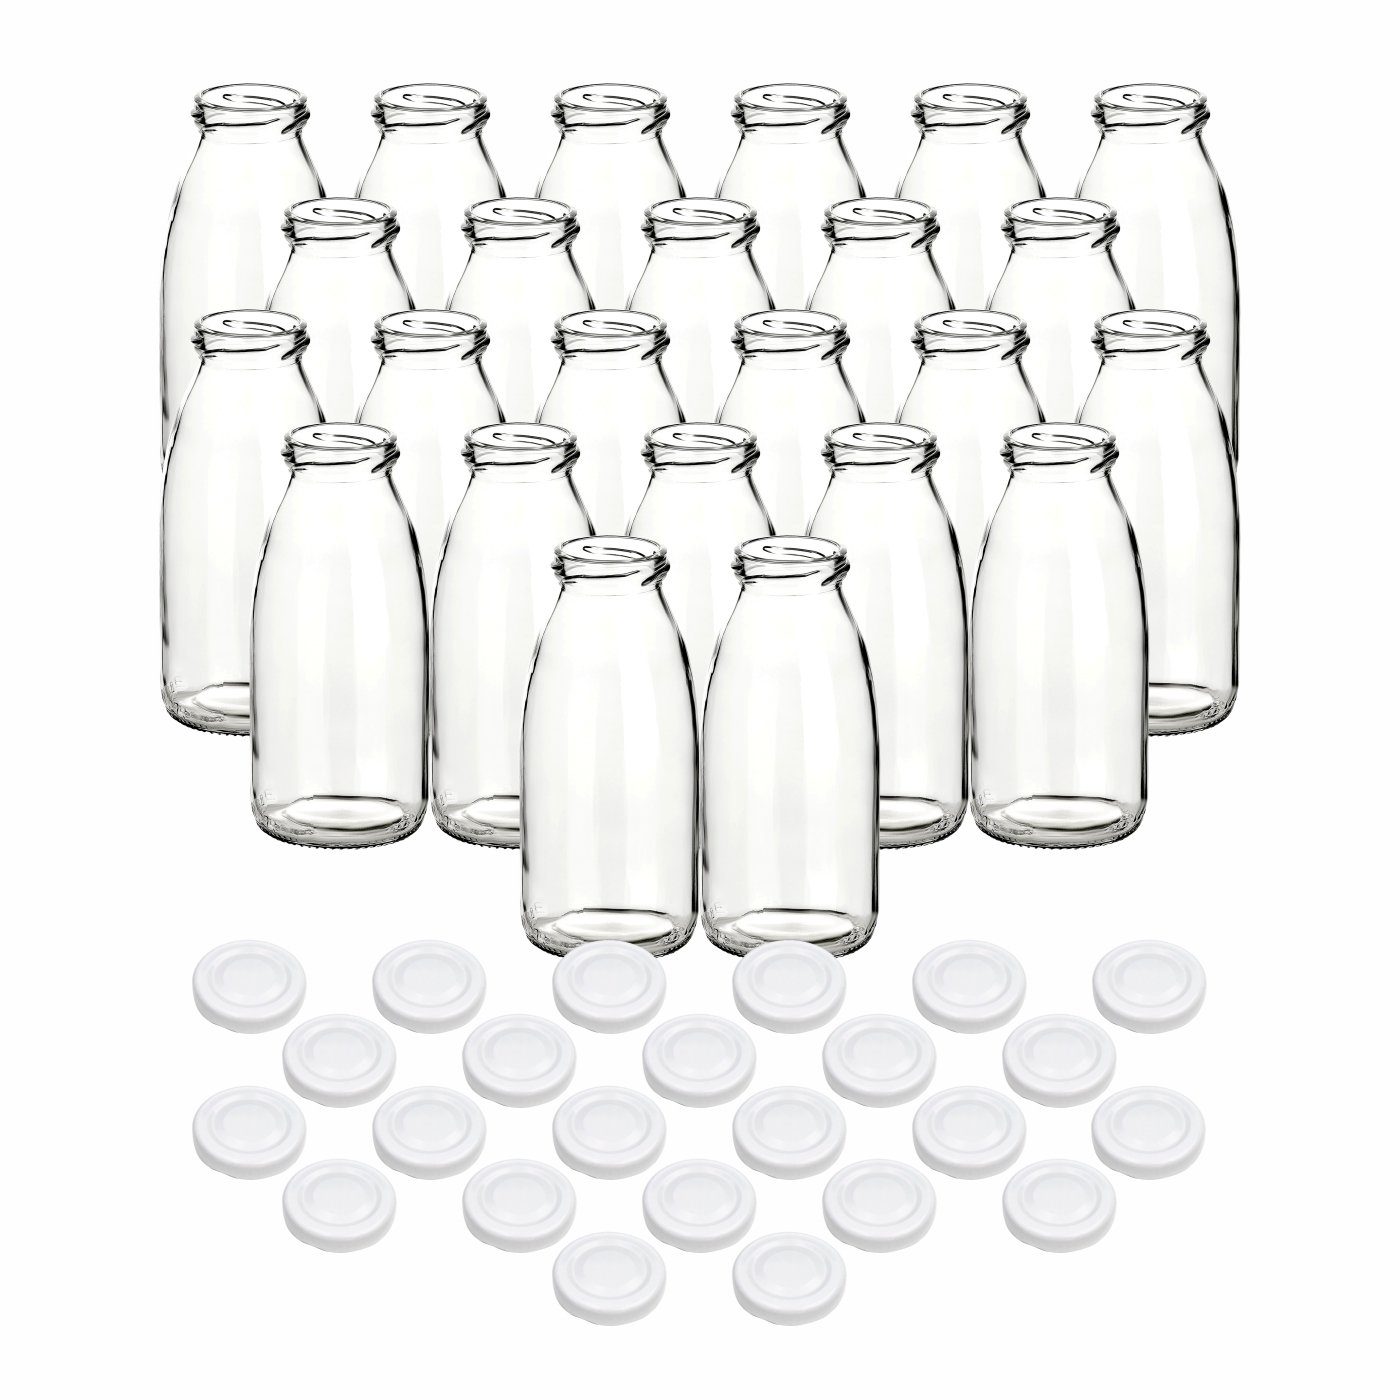 gouveo Trinkflasche Saftflaschen 250 ml mit Schraub-Deckel - Kleine Flasche 0,25 l, 24er Set, weiß